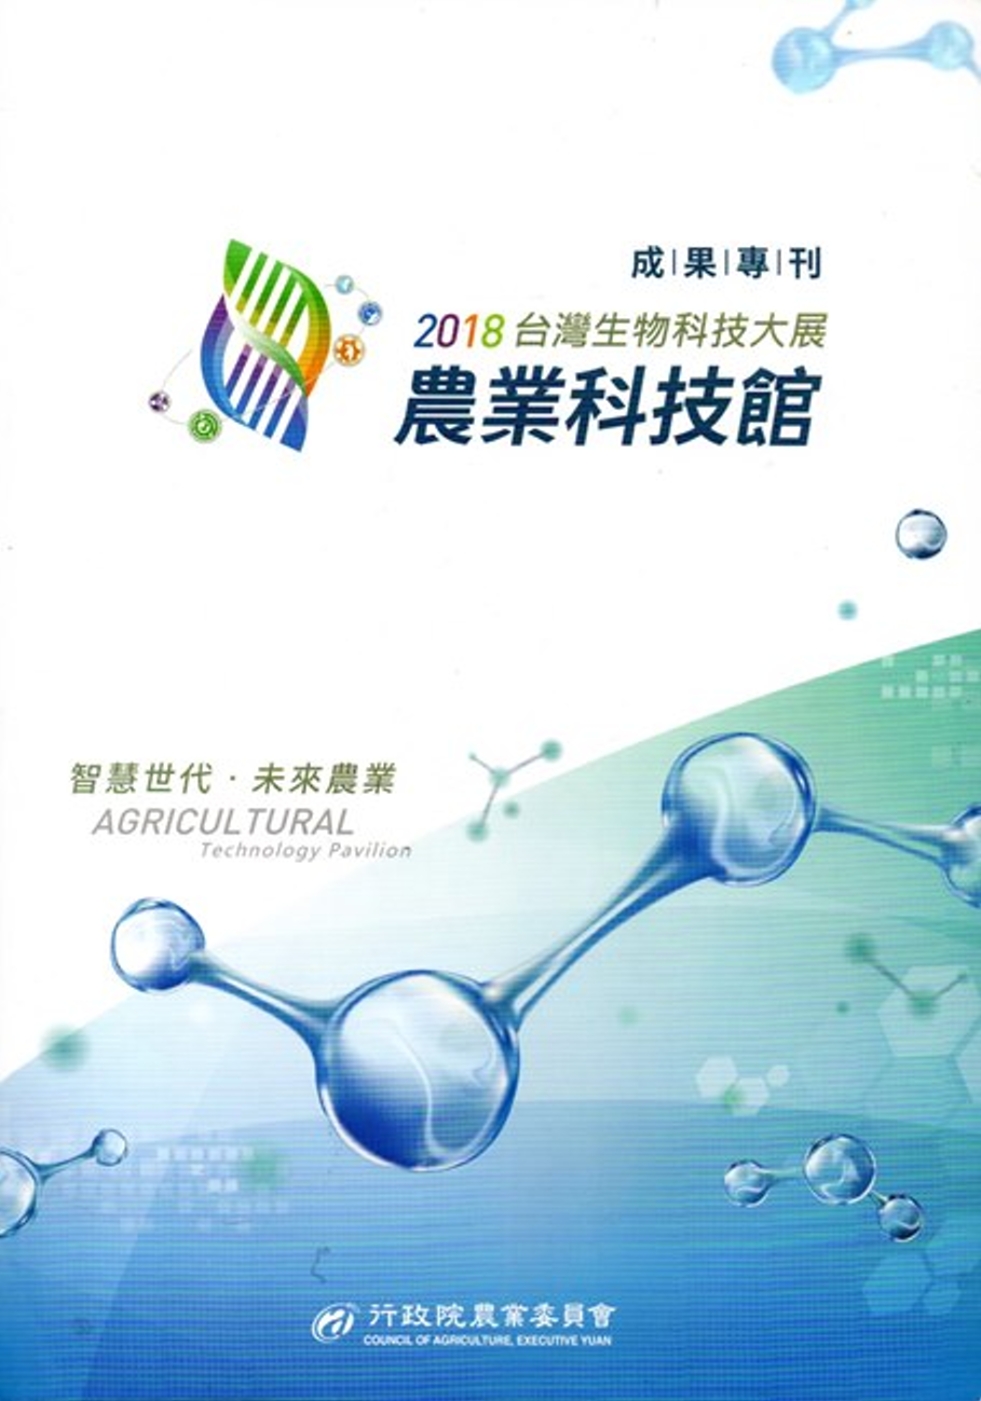 2018台灣生物科技大展農業科技館 成果專刊